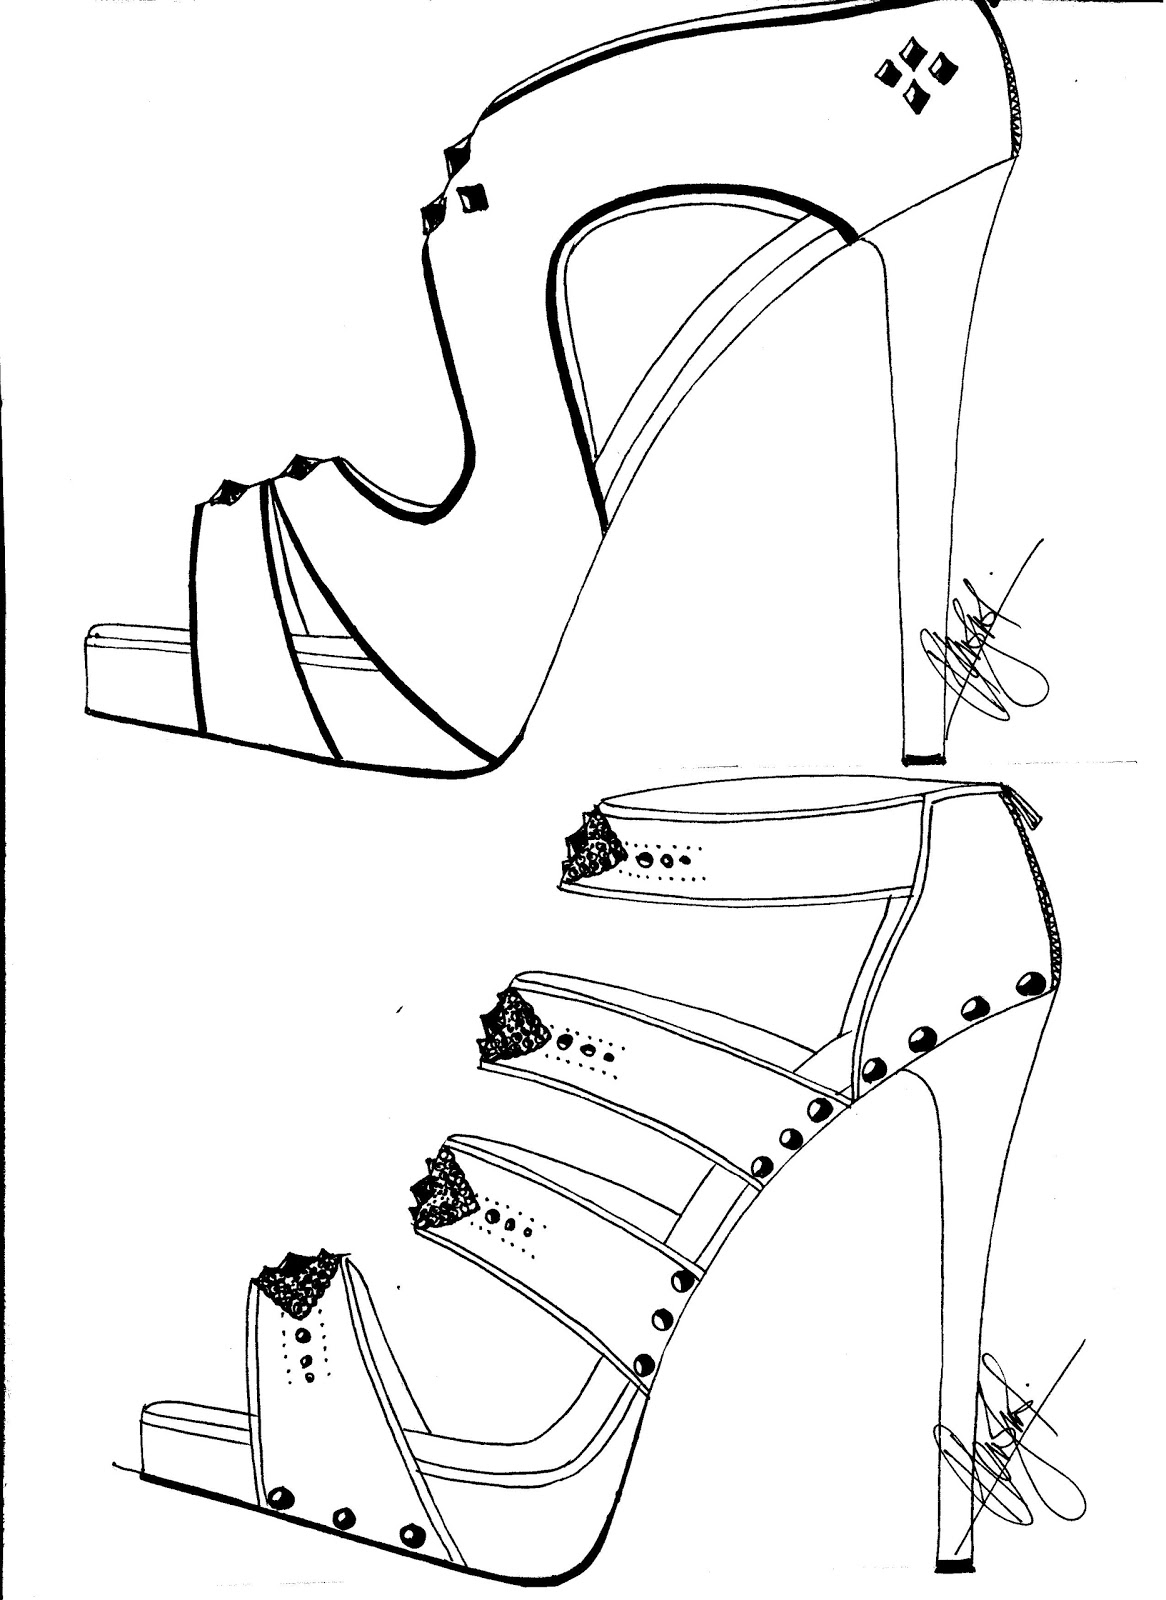 how to sketch high heels Как рисовать обувь рисуем ботильоны youloveitru high heels how to sketch 